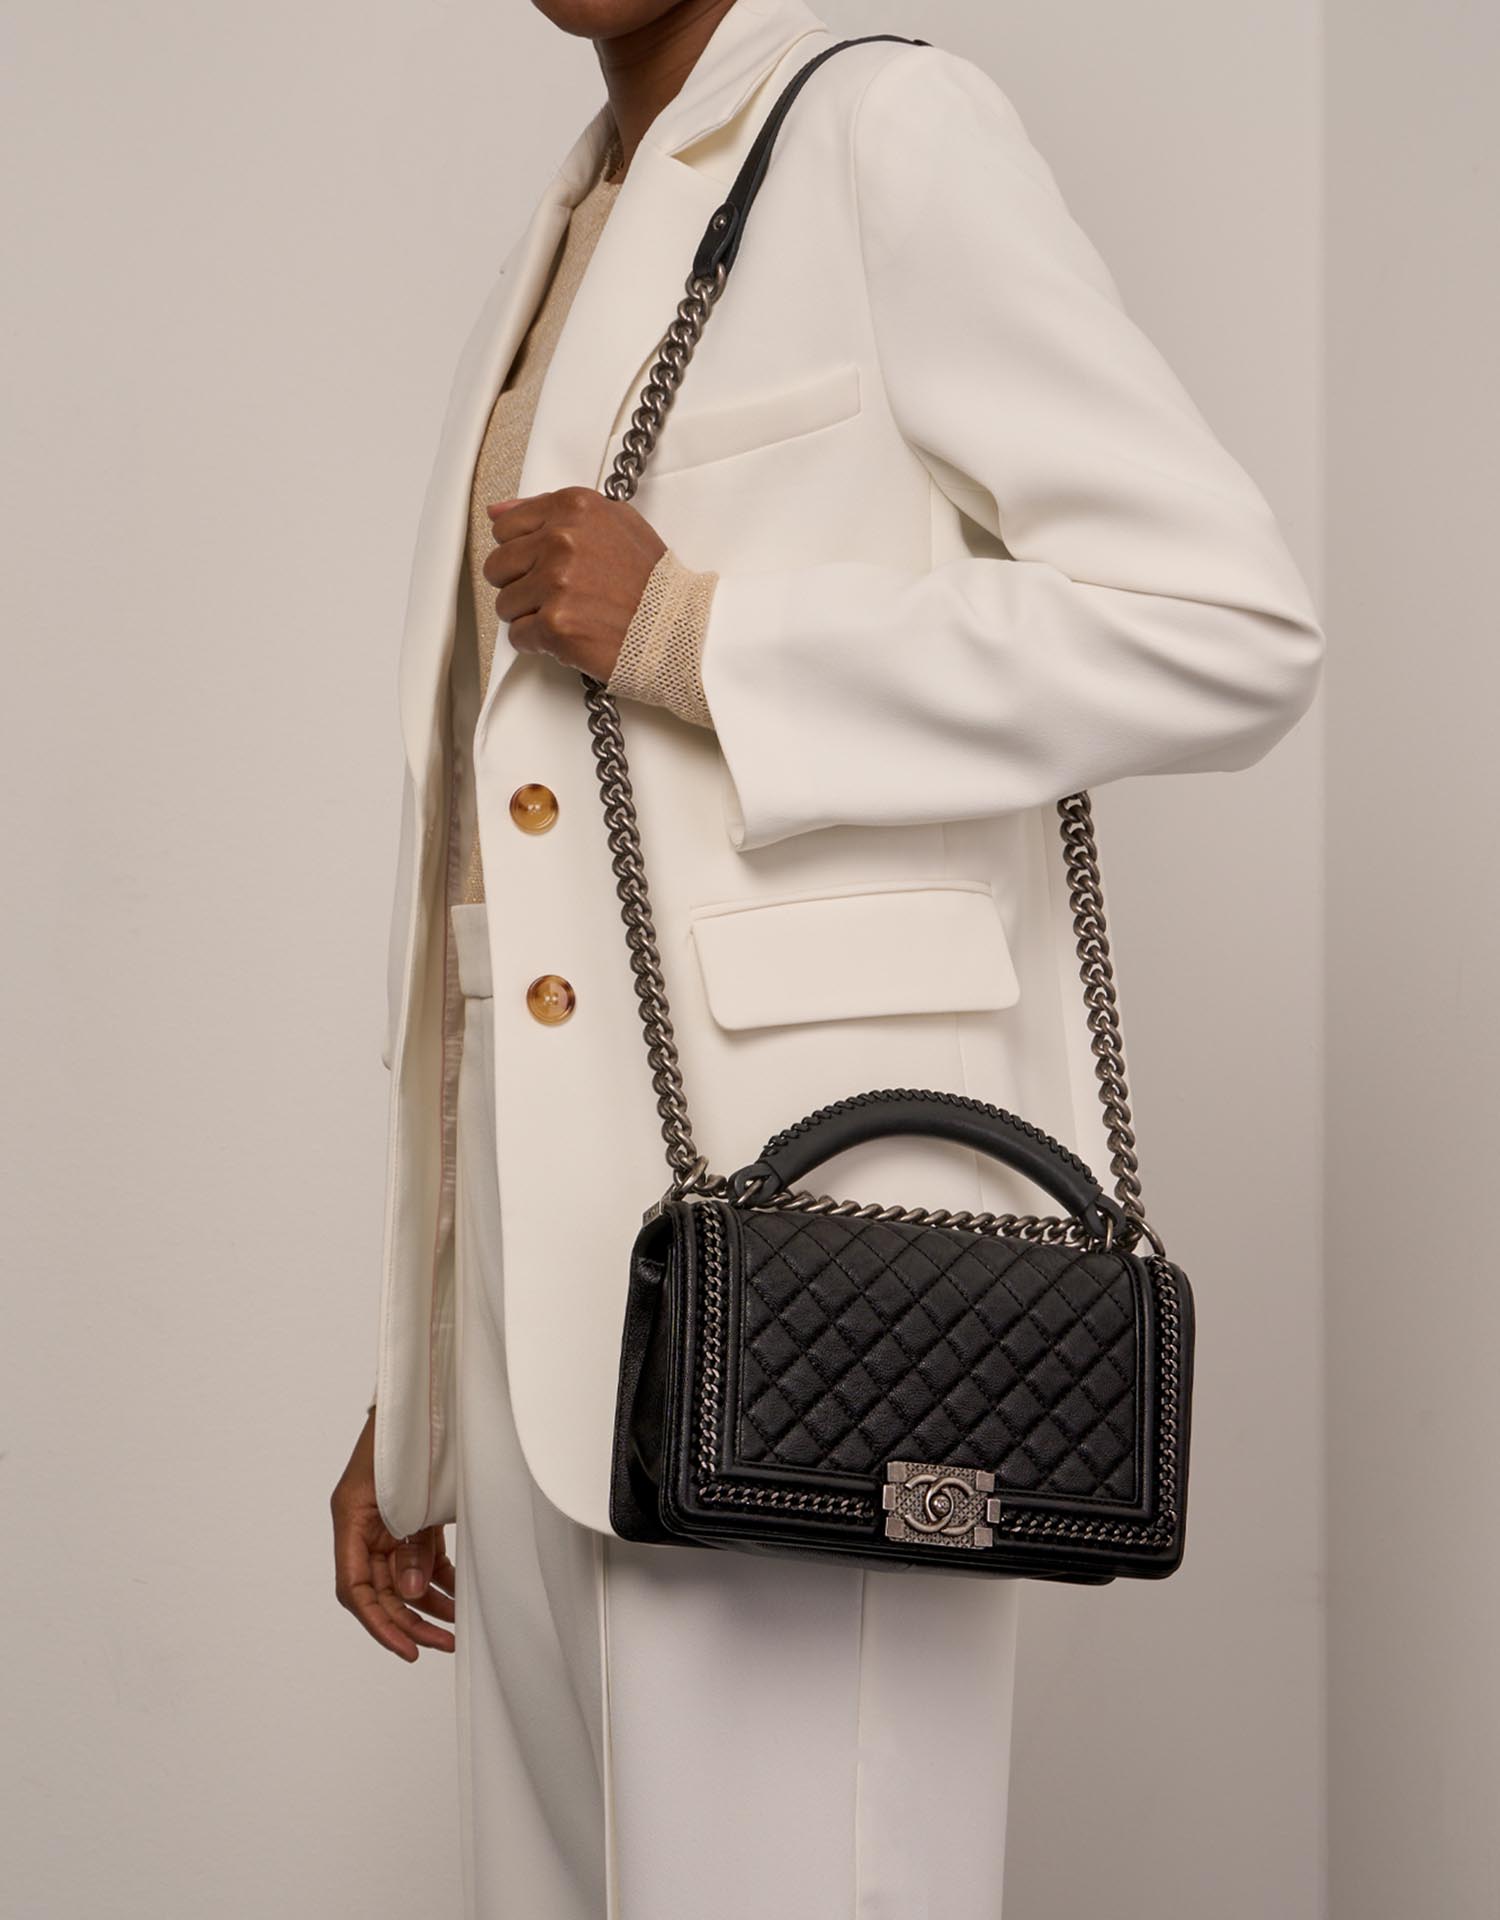 Túi xách Chanel Boy chất lượng cao cấp Cập nhật mẫu tháng 8